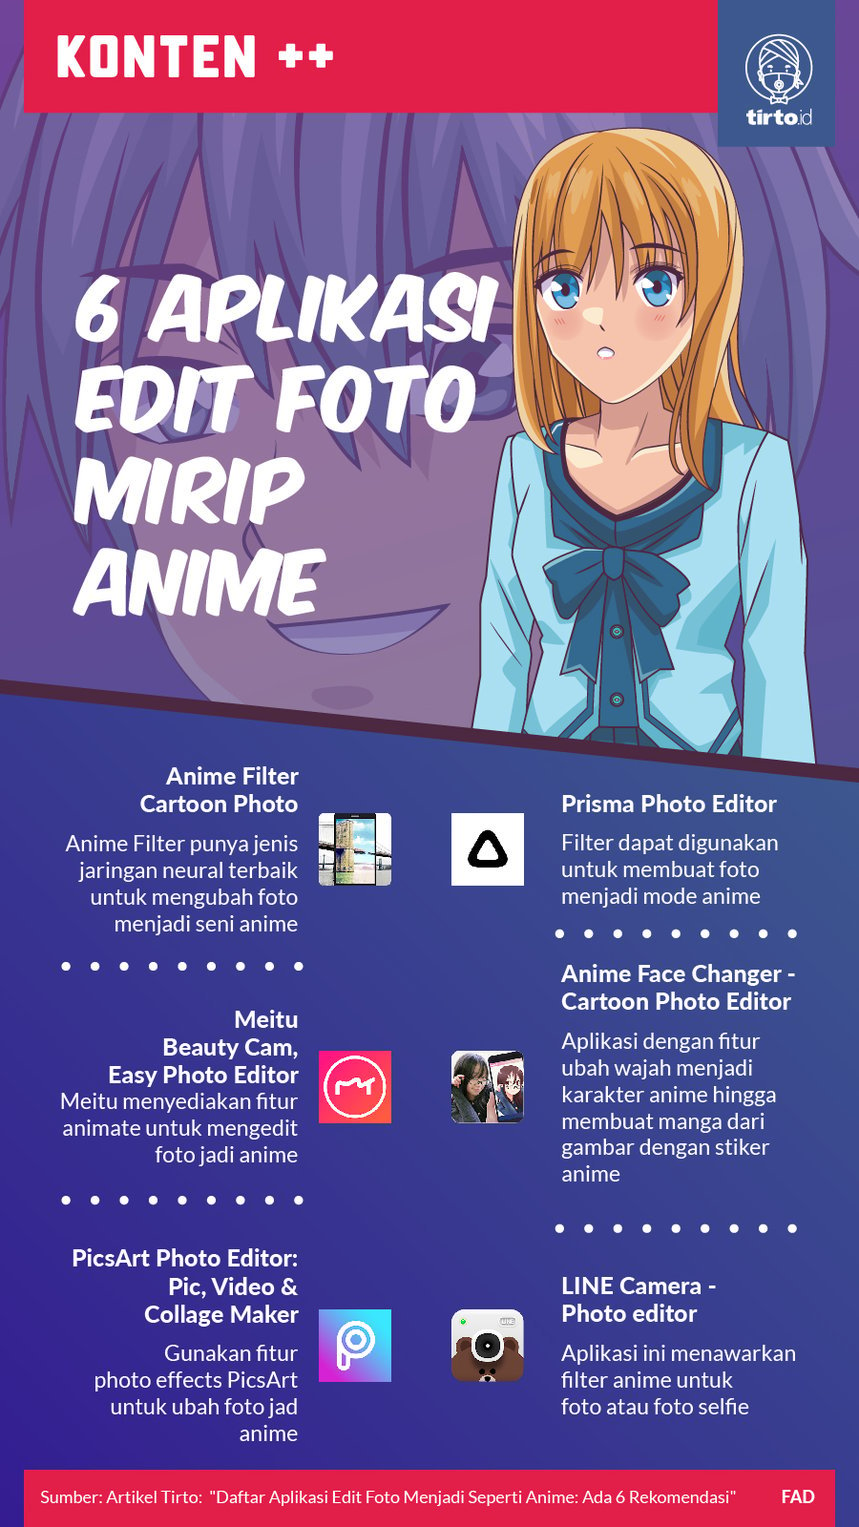 Daftar Aplikasi Edit Foto Menjadi Seperti Anime Ada 6 Rekomendasi 8695